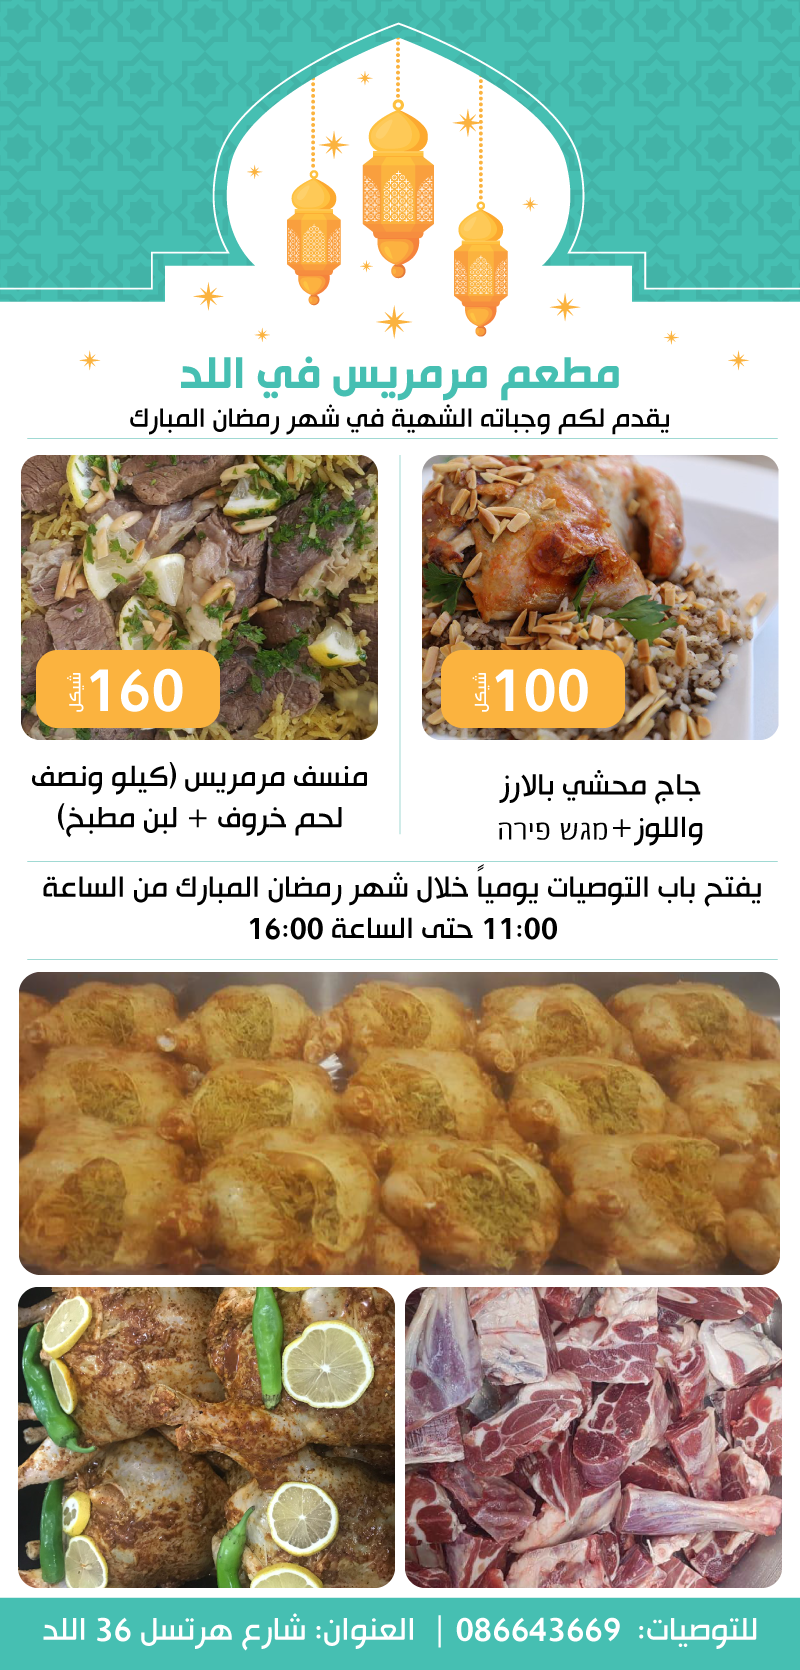   للتوصية - مطعم مرميس في اللد يقدم لكم وجباته الشهية في رمضان 